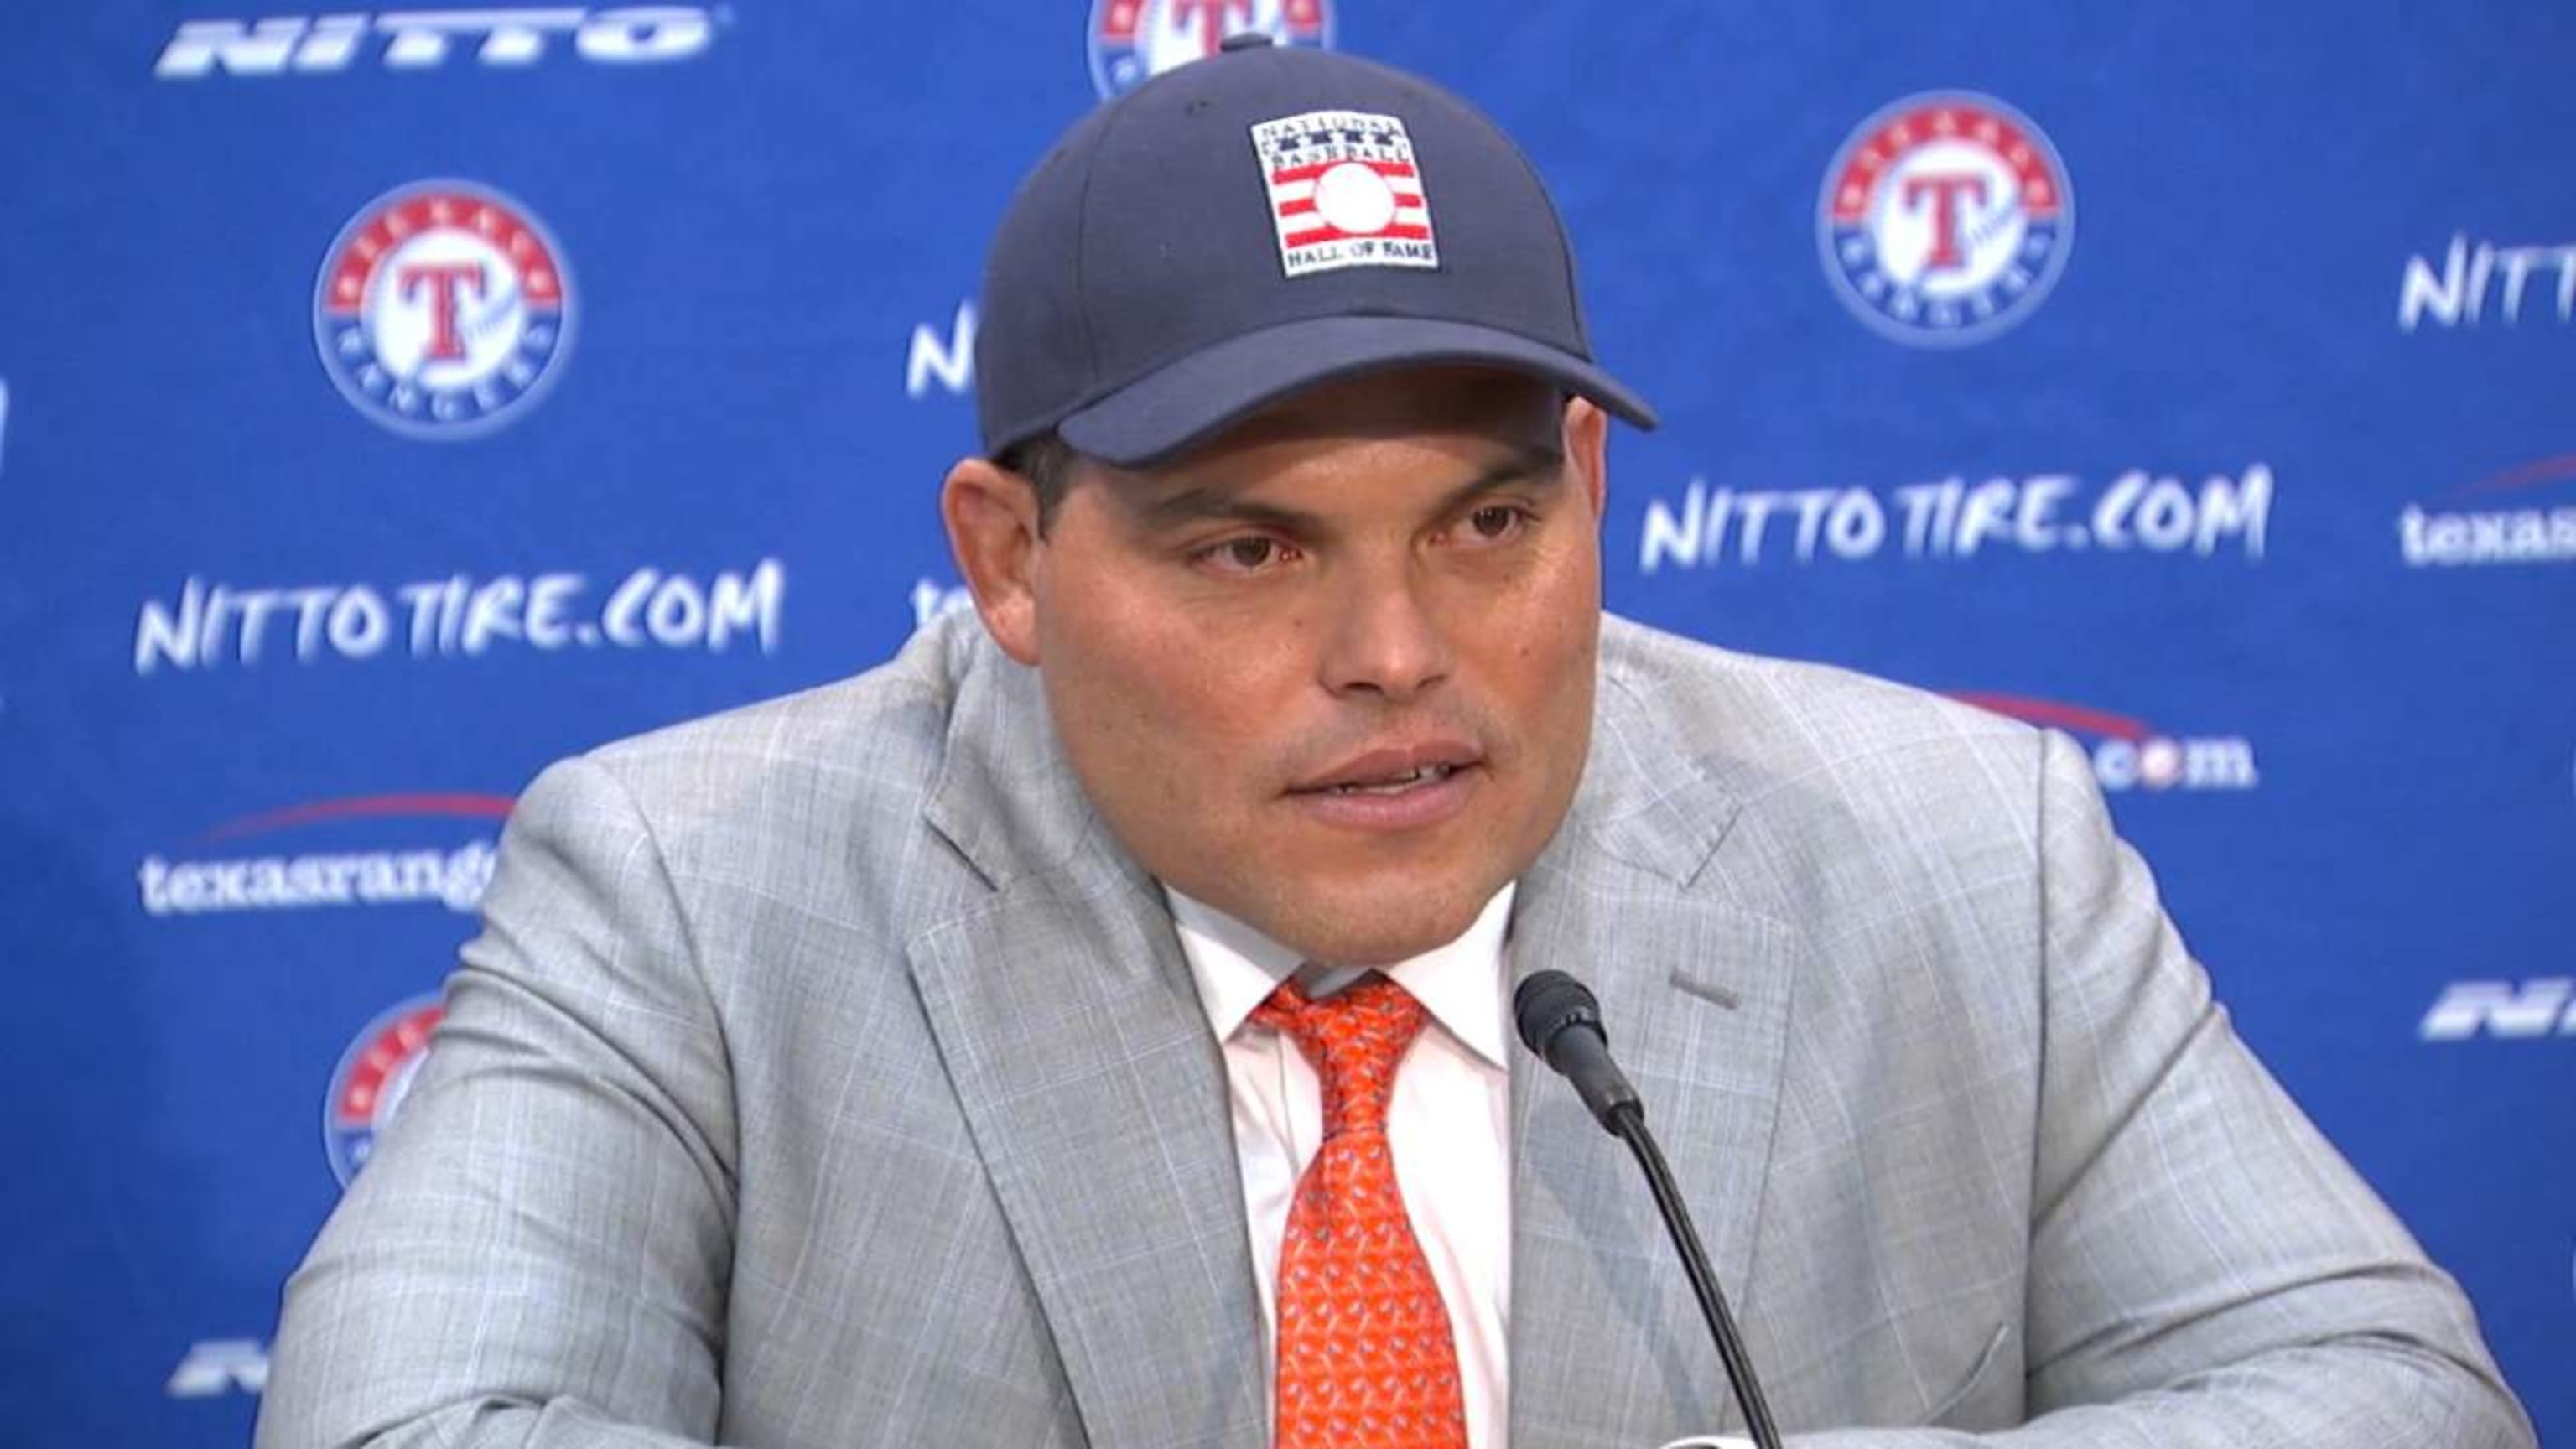 Rangers hire Ivan Rodriguez for ambassador job - NBC Sports